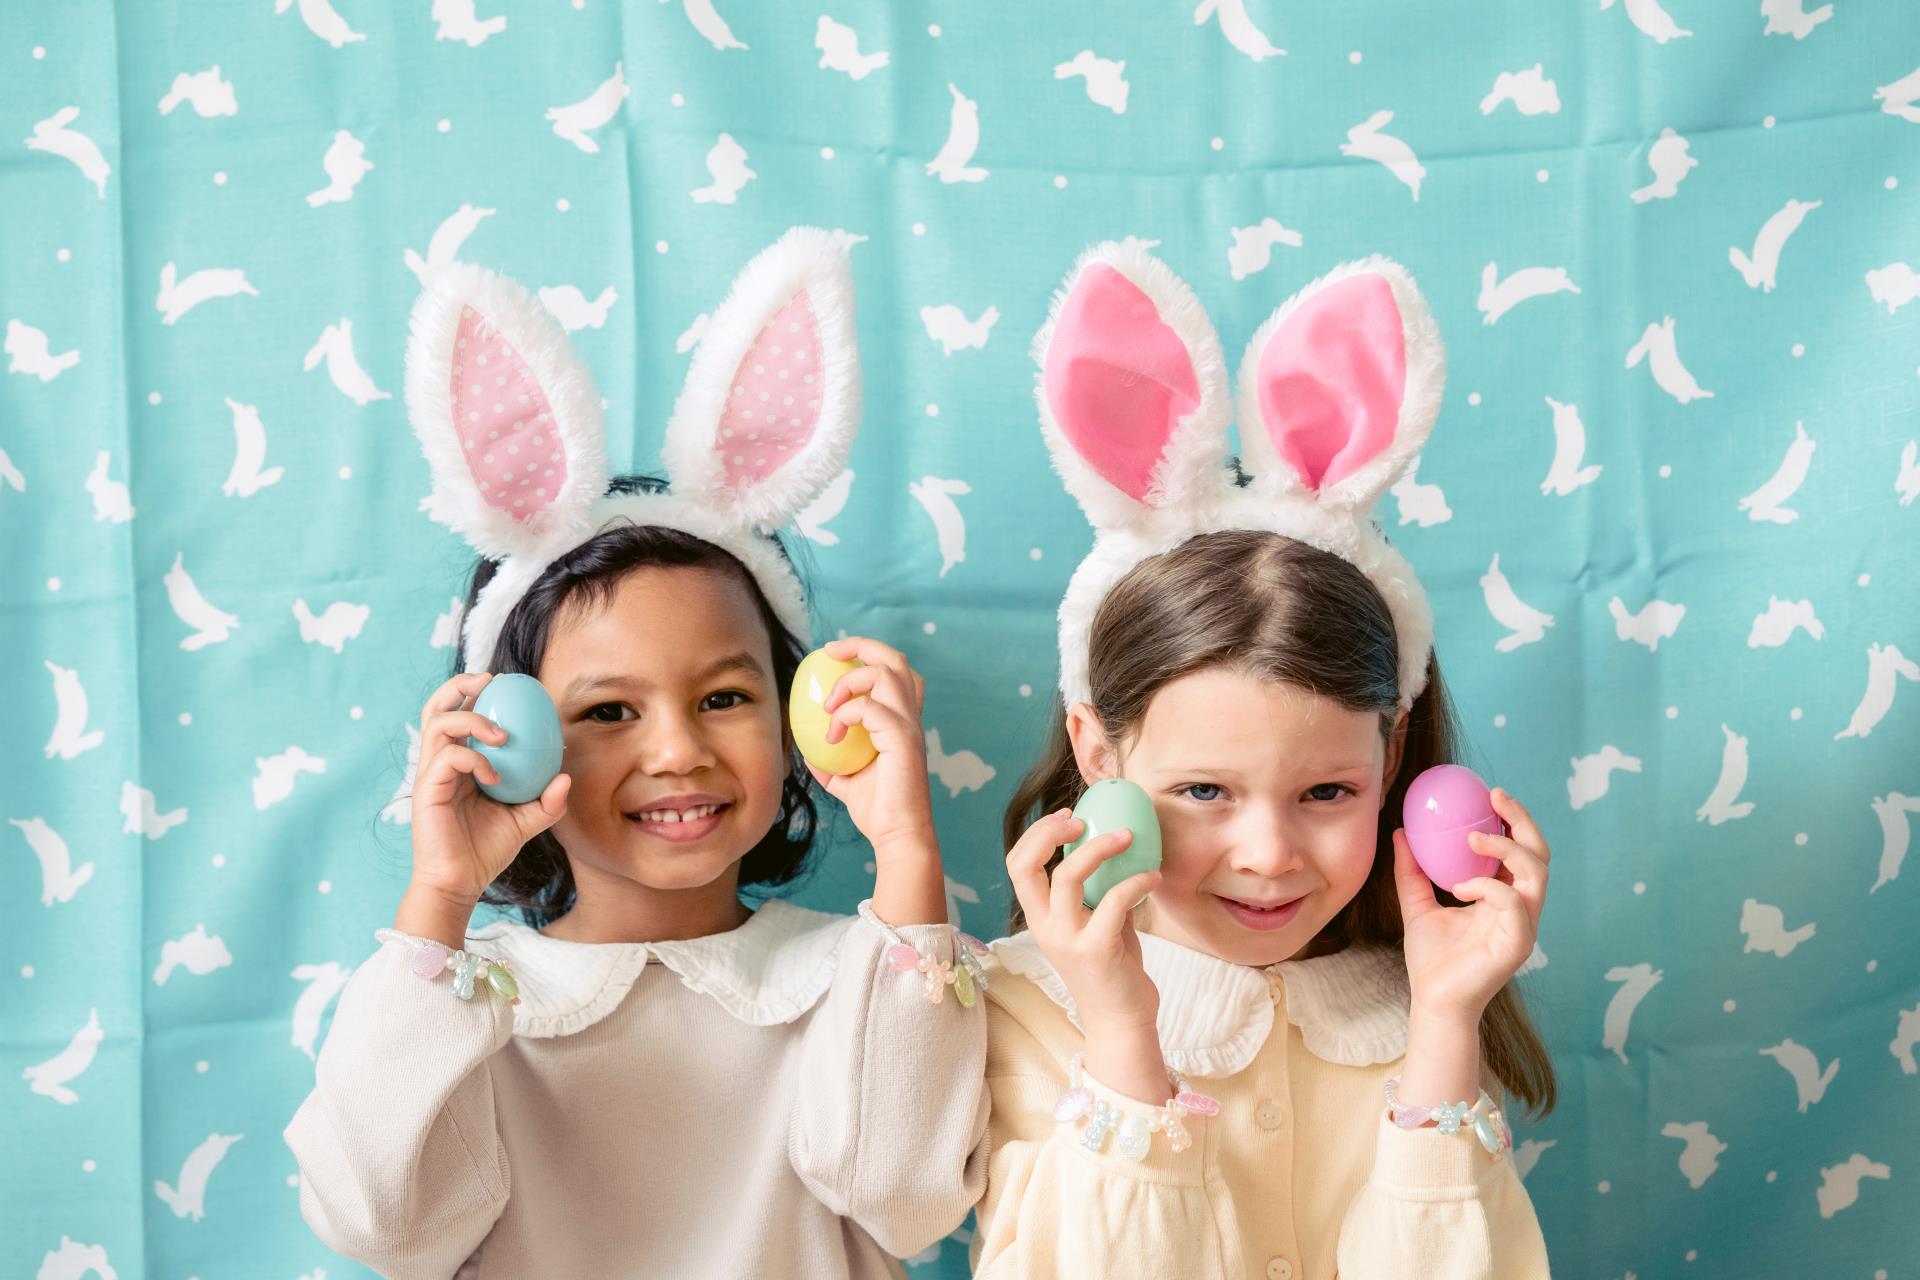 An Australian Easter Tale with Ballerina Bunny